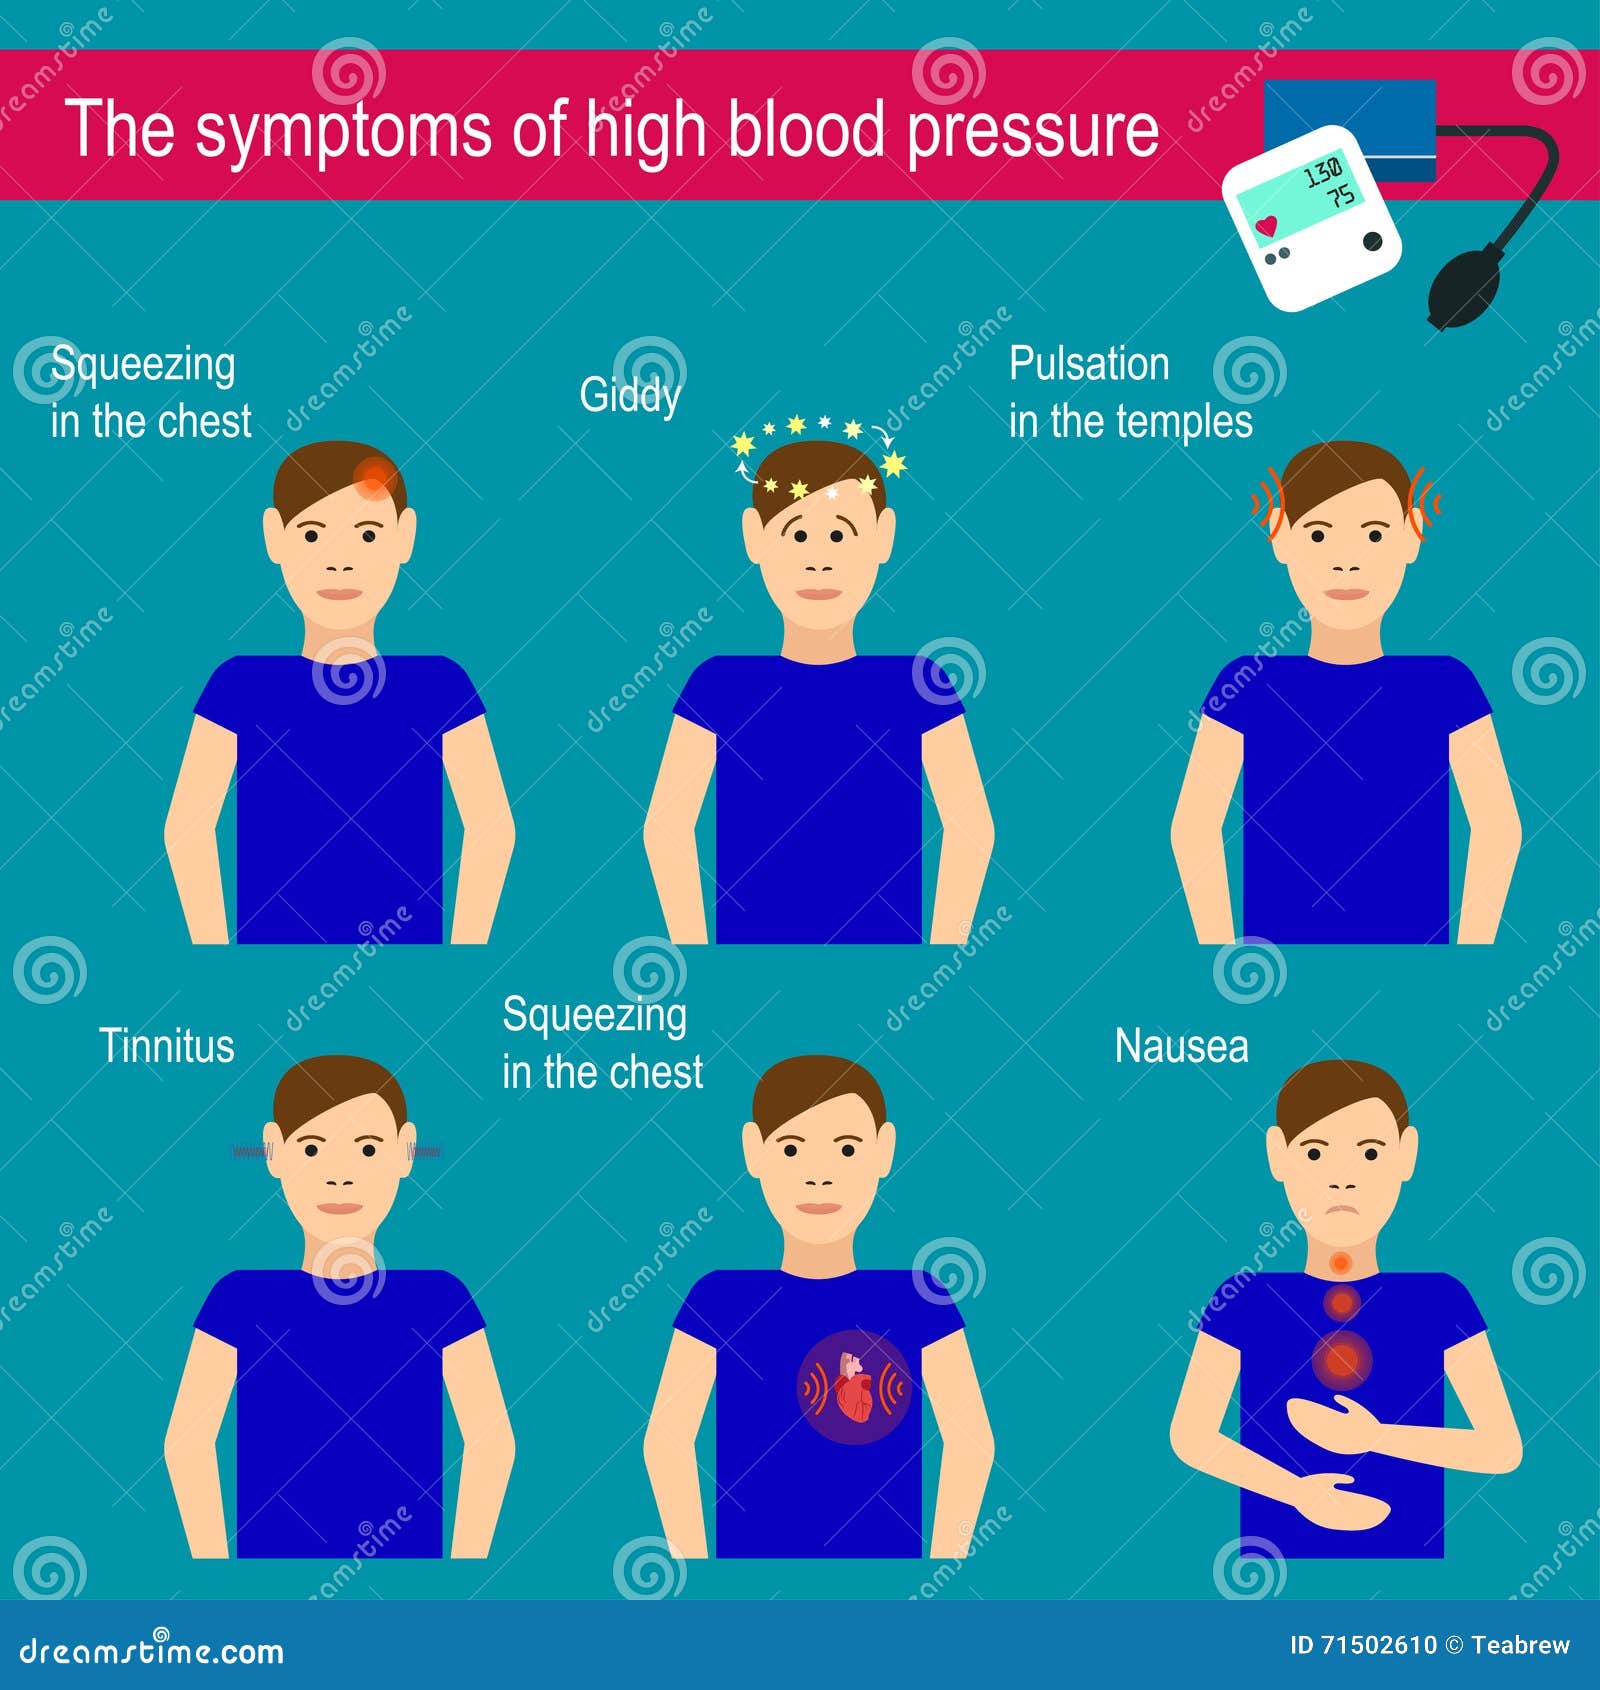 blood pressure symptoms headache)